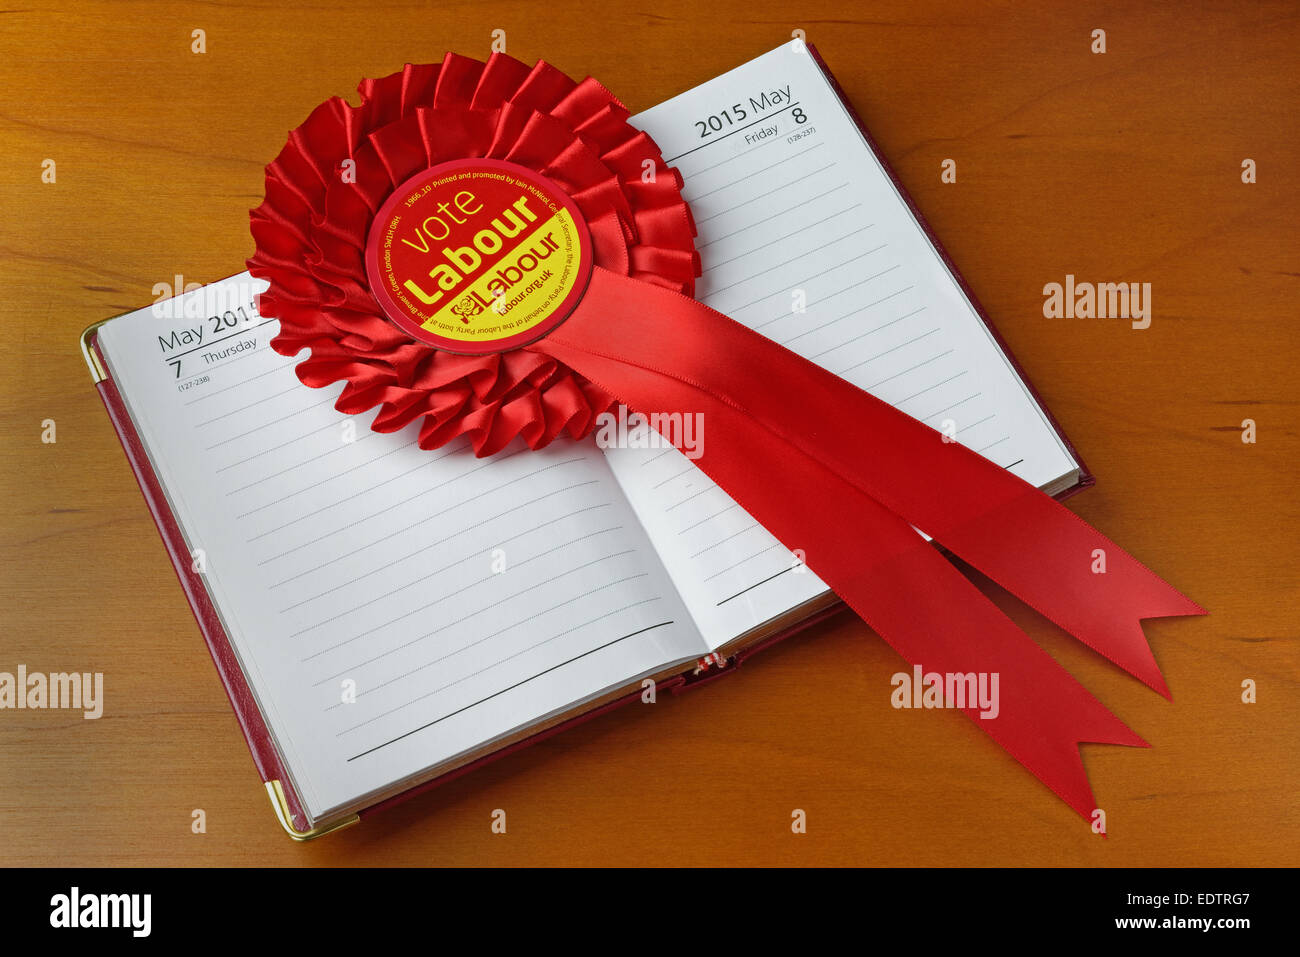 Abstimmung Labour Rosette auf ein Tagebuch auf General Election Day, 7. Mai. 2015. Wahl Konzept. Stockfoto